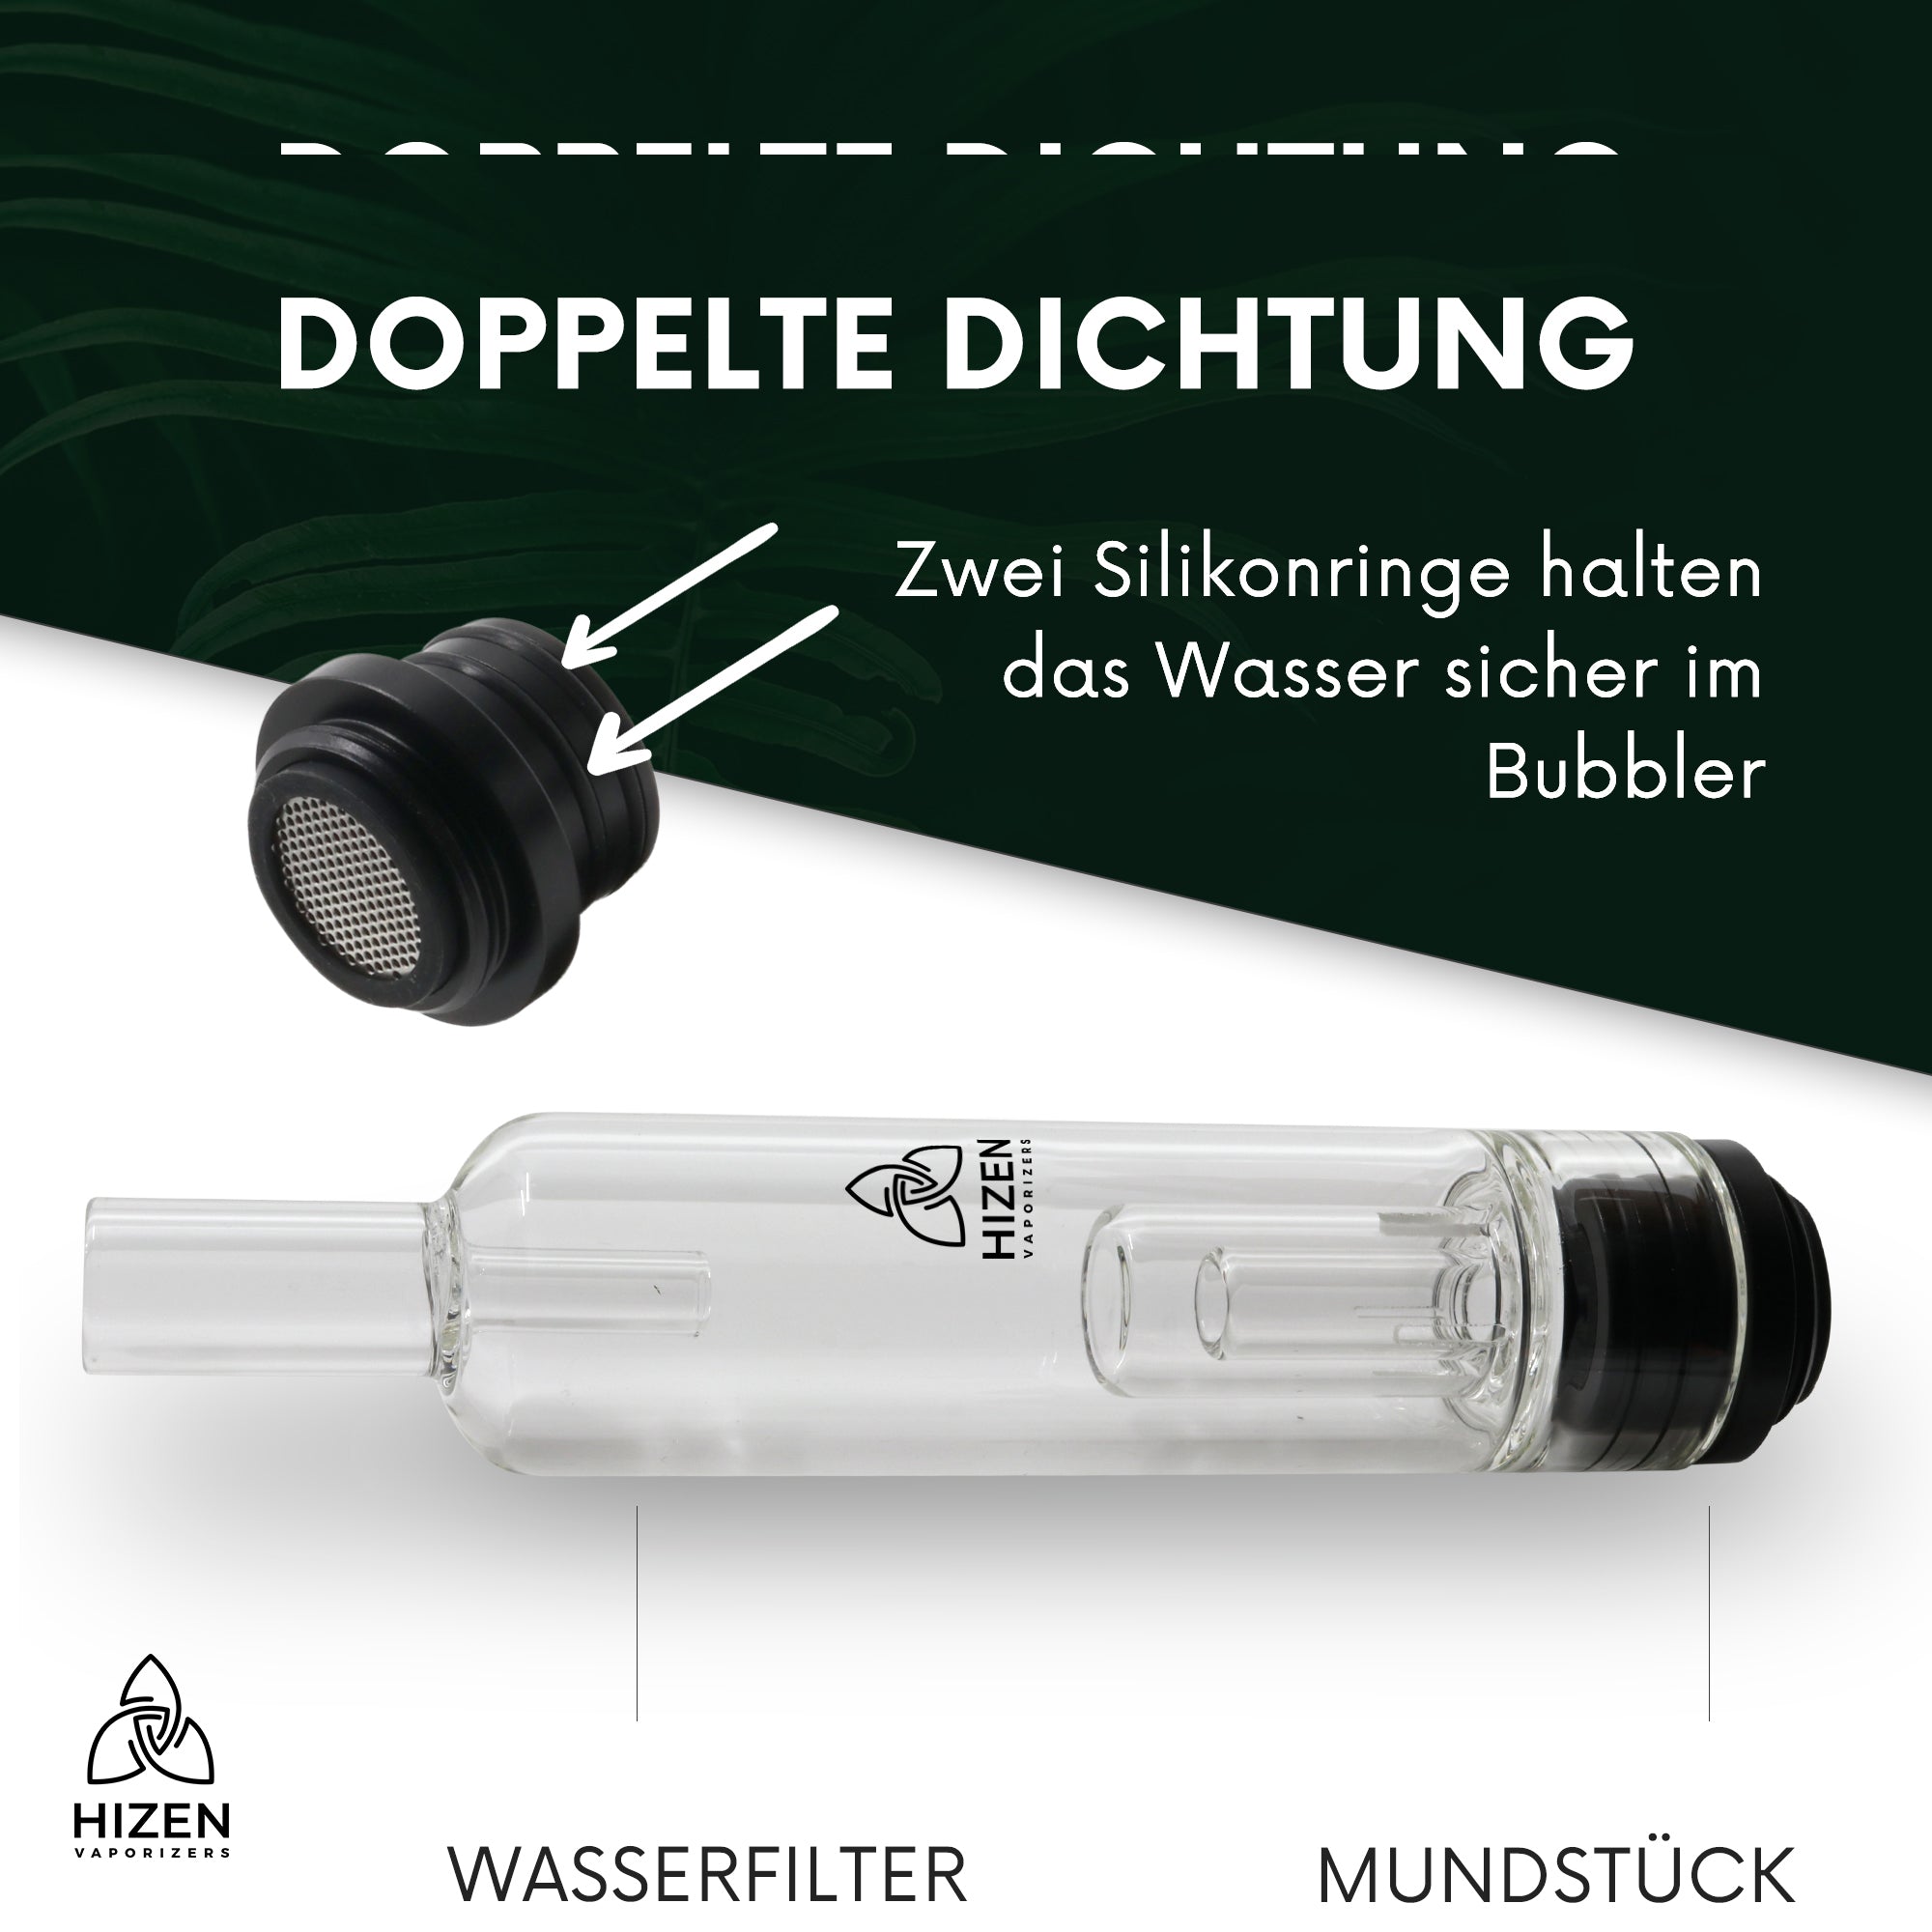 Bubbler Mundstück - Stilus Mini & Stilus Pro mit Doppeldichtung zusammengesetzt aus Wasserfilter und Mundstück.